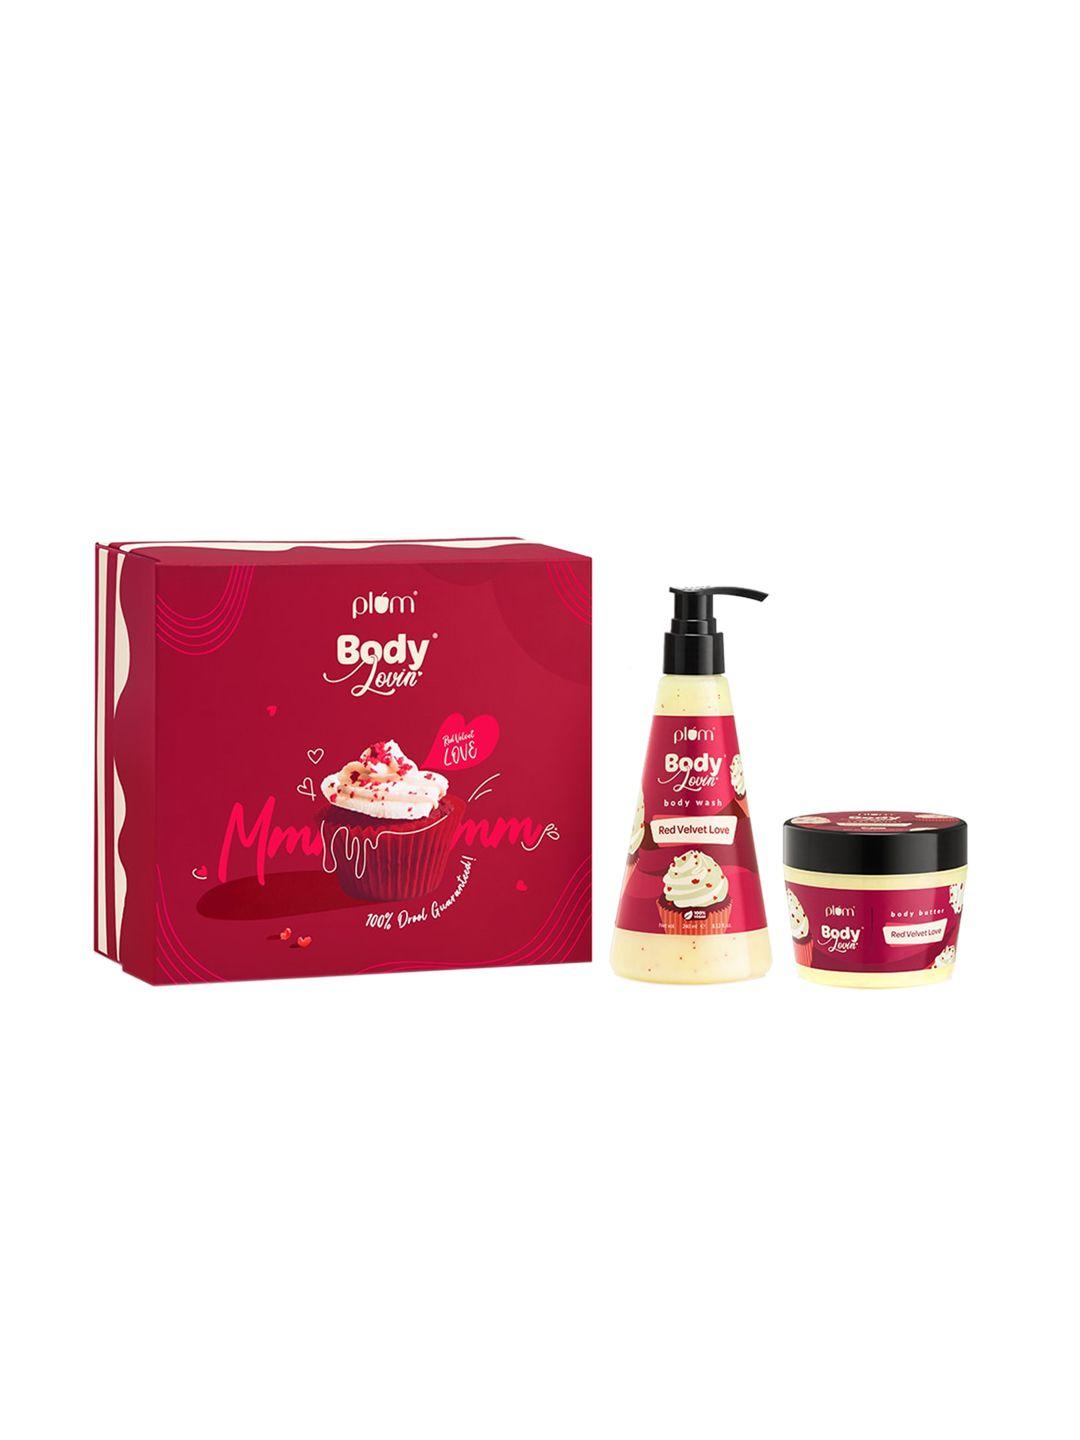 plum bodylovin red velvet love gift kit - body wash 240ml + body butter 200g